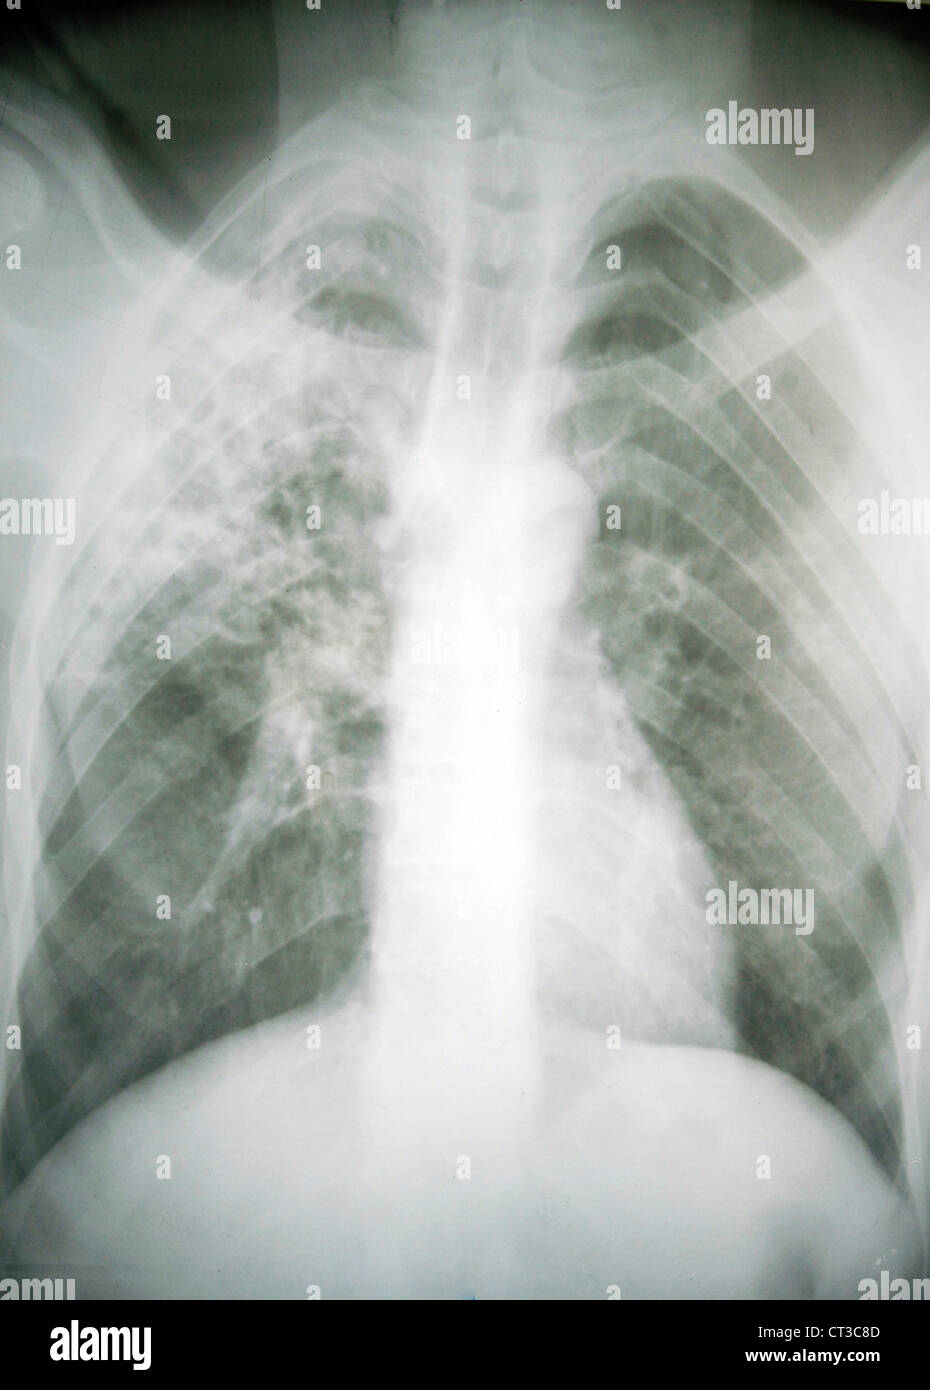 x-ray of rib cage Stock Photo